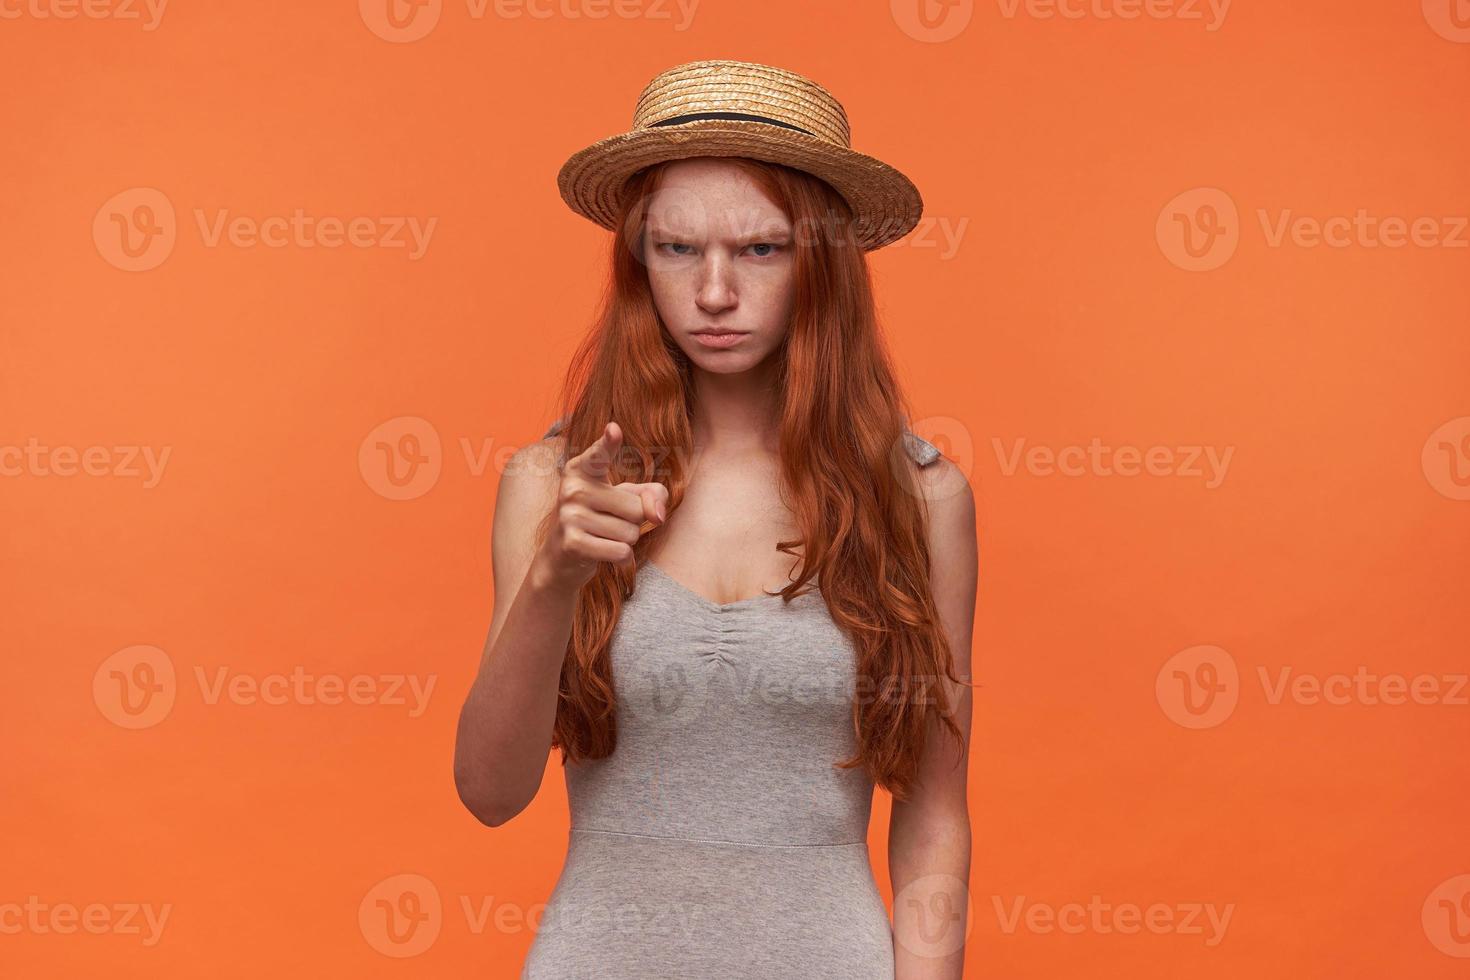 retrato de una joven pelirroja frunciendo el ceño con el pelo largo con camisa gris y sombrero de paja, levantando el dedo índice en señal de advertencia, posando sobre fondo naranja foto